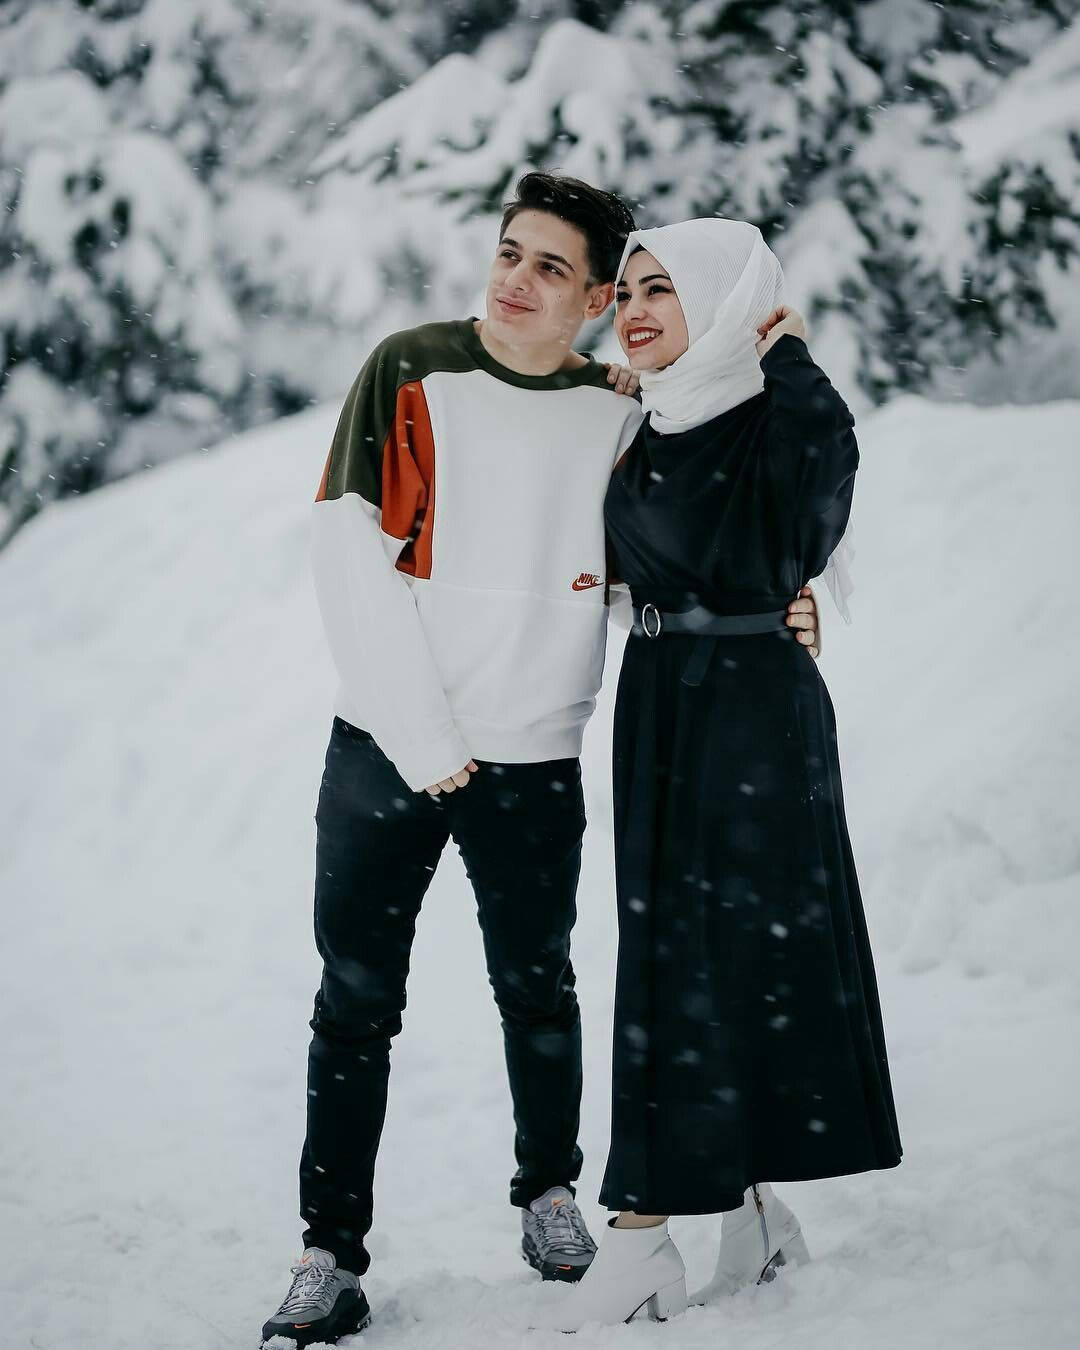 Muslimischespaar Winter-fotoshooting Wallpaper